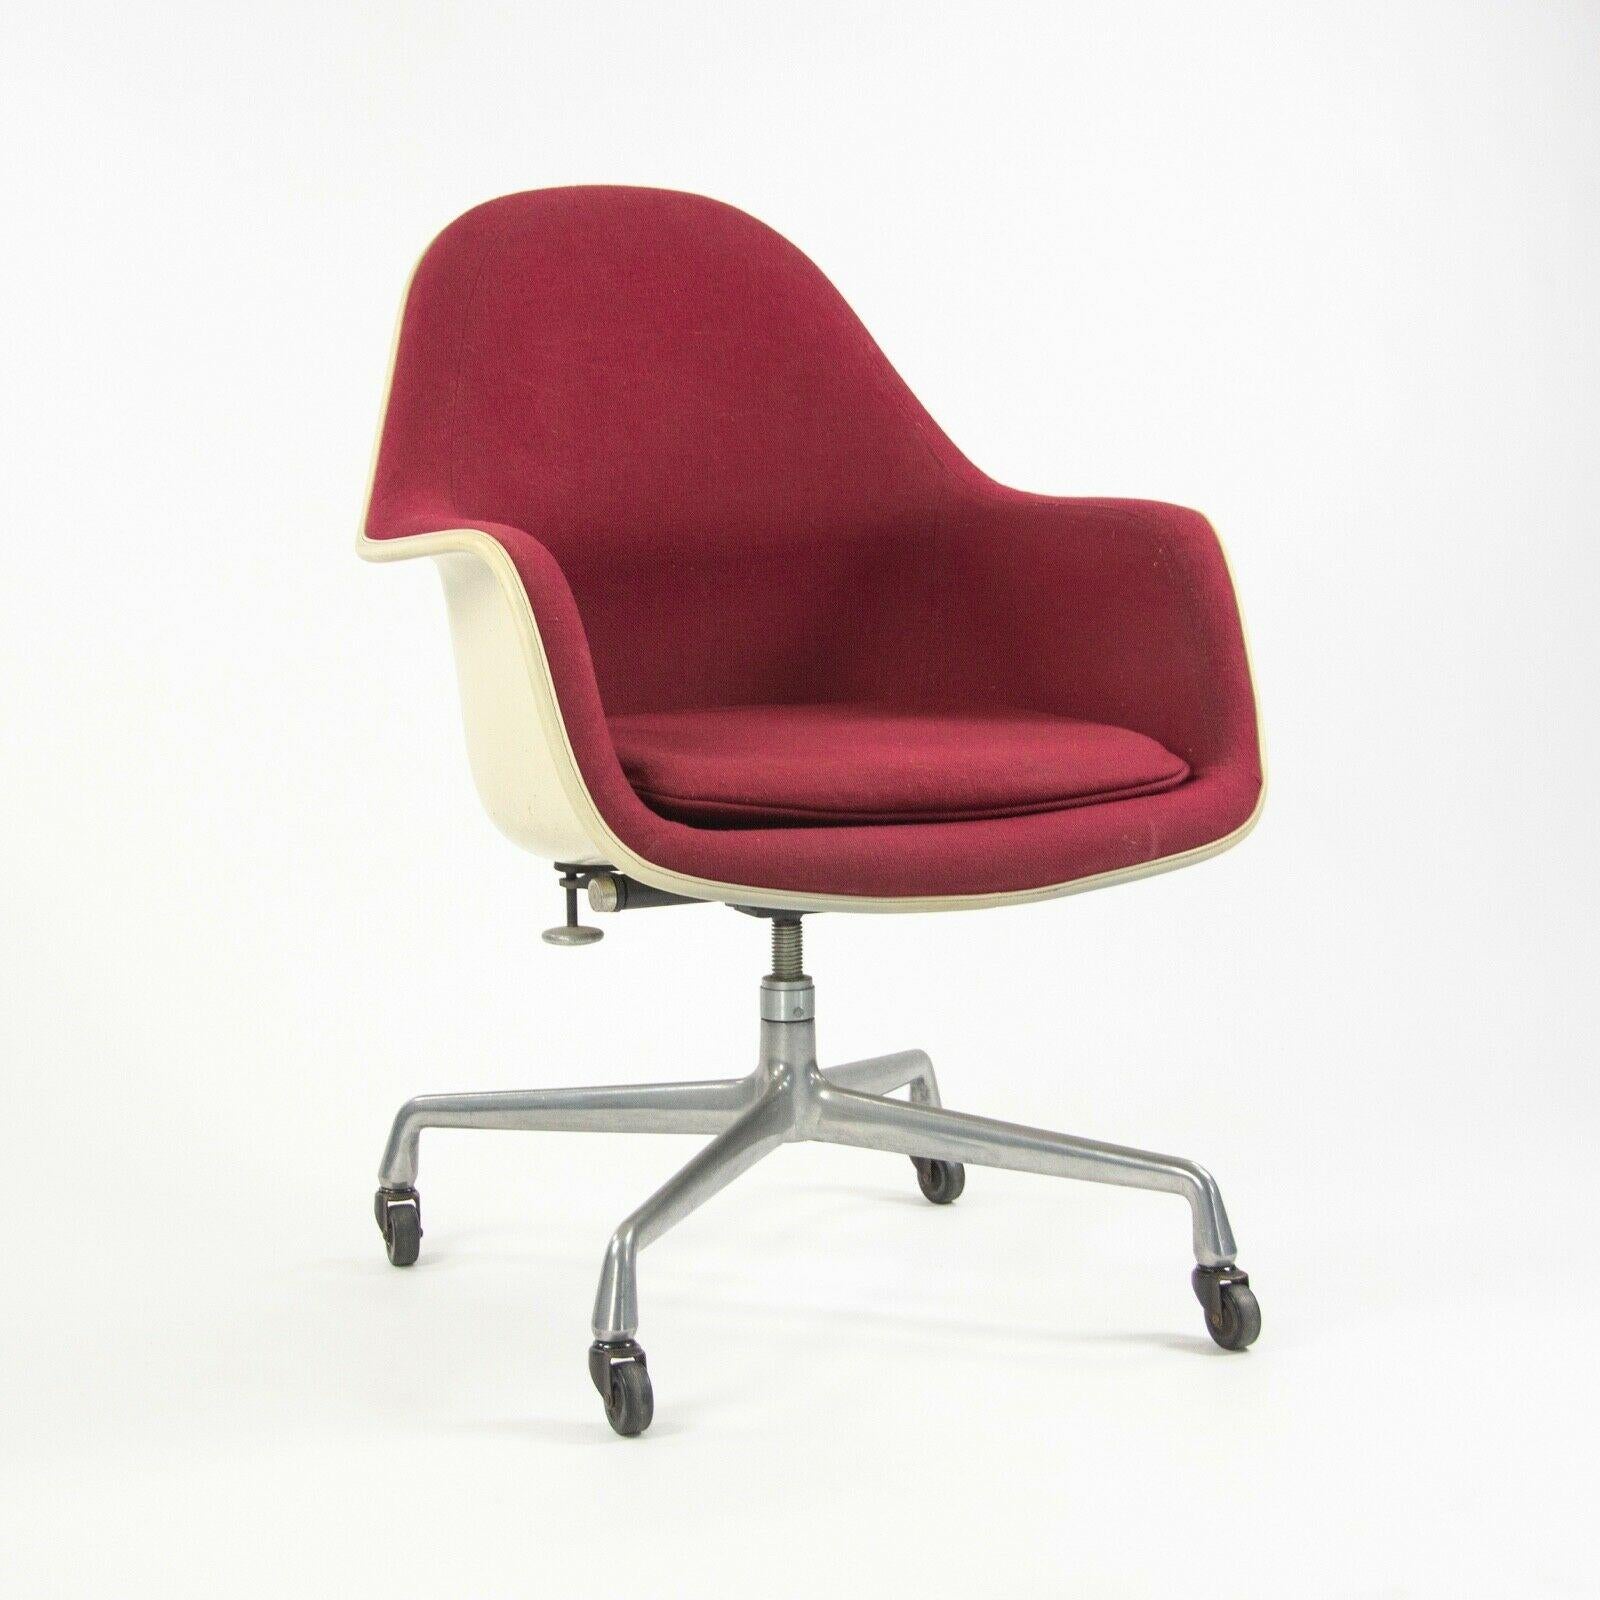 
Zum Verkauf angeboten wird ein seltener und wunderbarer Stuhl EC175-8, entworfen von Charles und Ray Eames, hergestellt von Herman Miller. Dies ist einer der einzigartigeren und späteren Eames-Entwürfe, der auf den Glasfaserinnovationen der 1950er